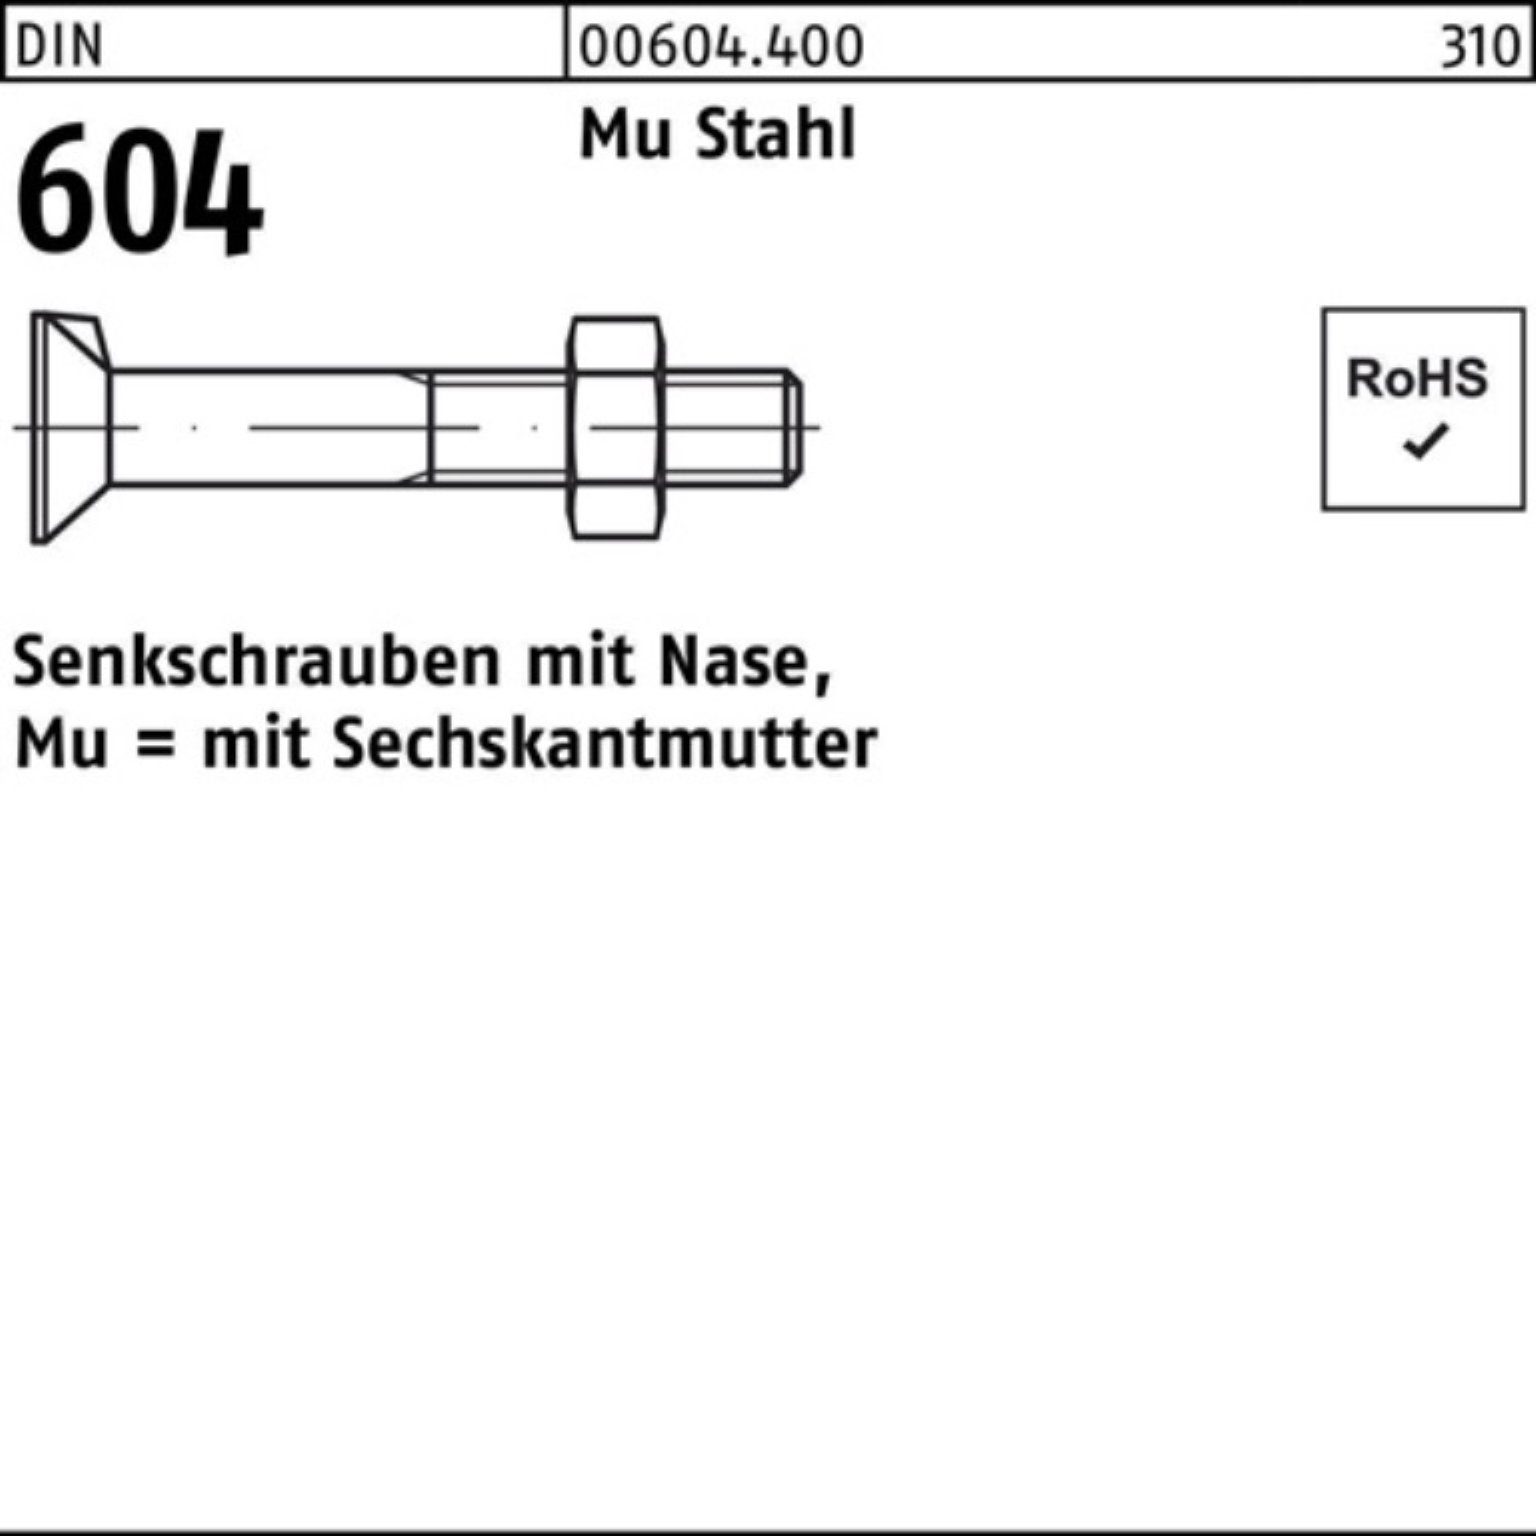 M24x Mu Nase/6-ktmutter Pack Reyher 4.6 DIN 604 65 Stahl 2 Senkschraube 100er Senkschraube